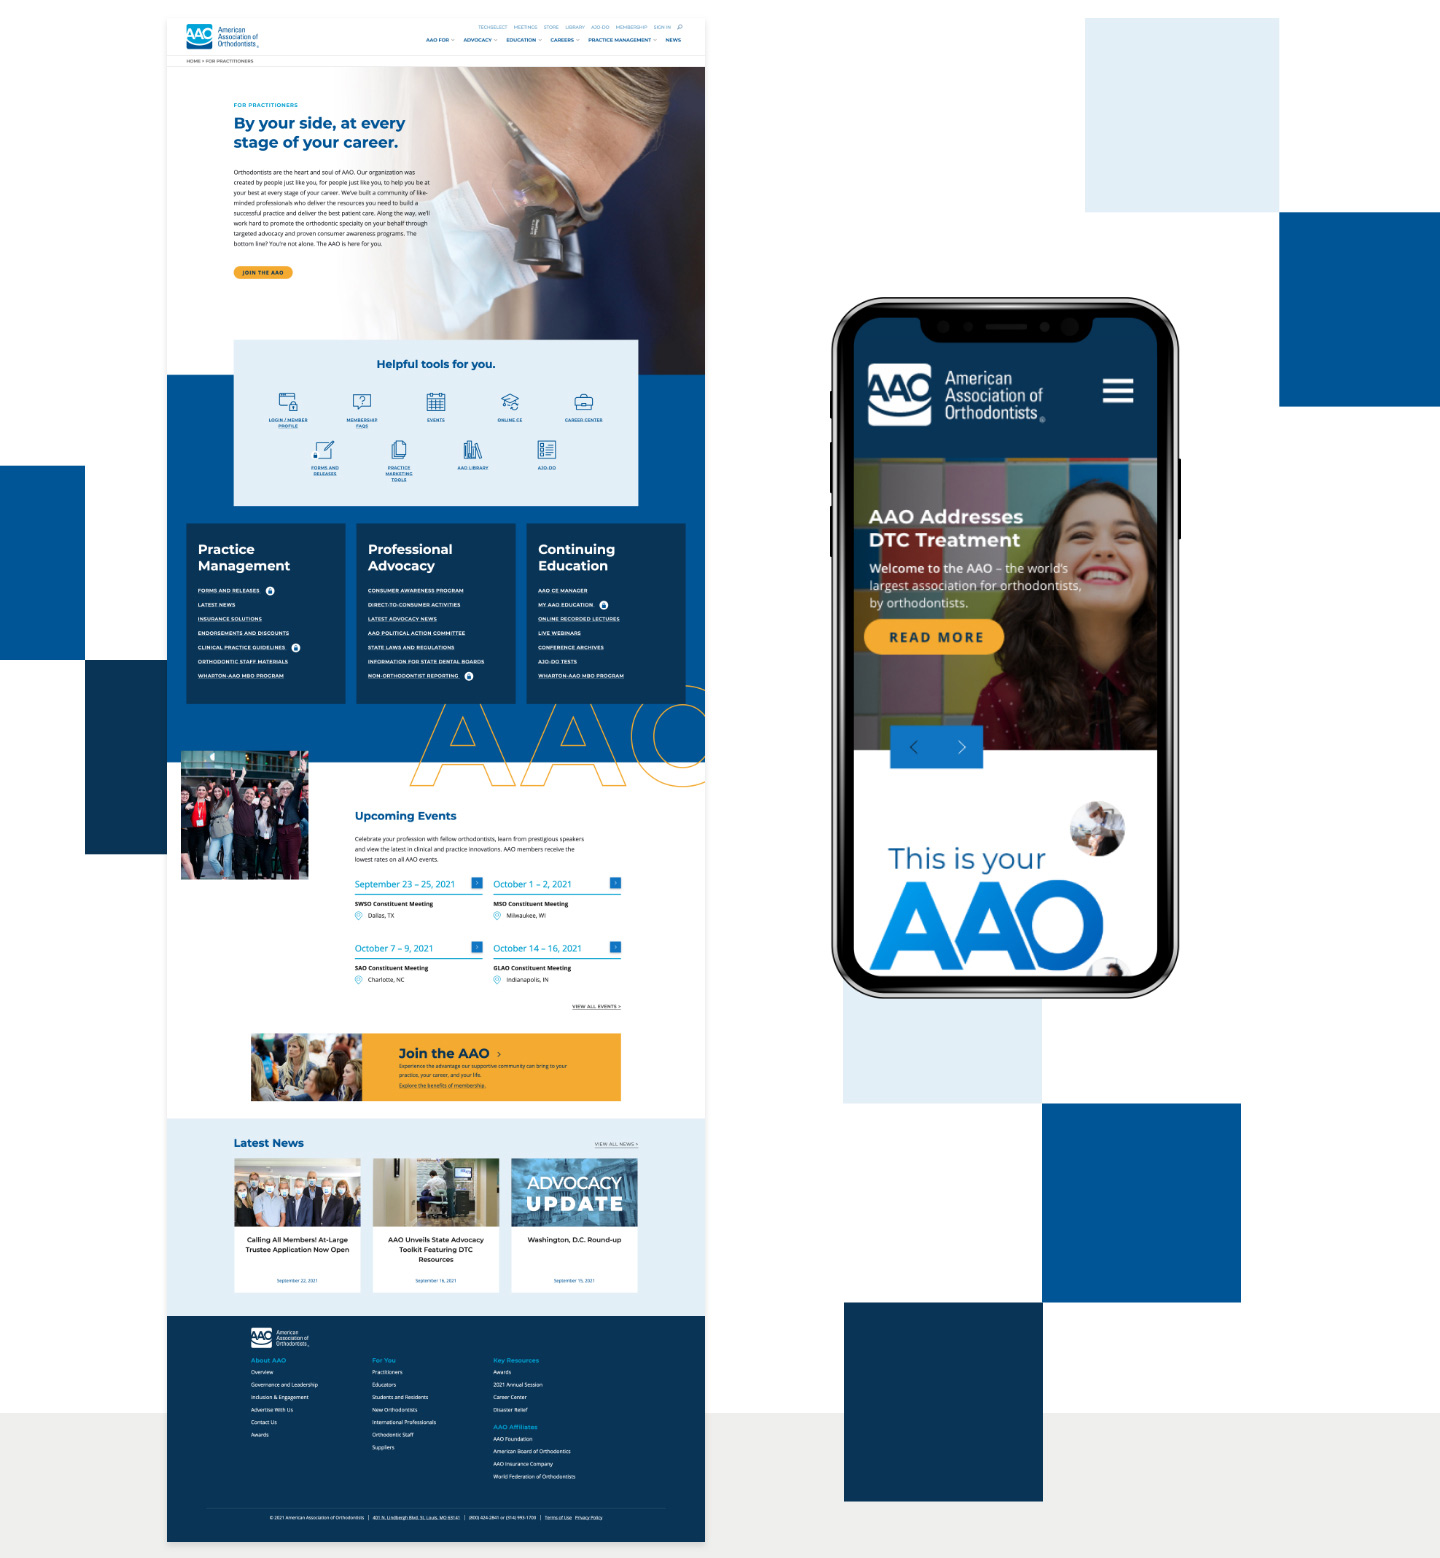 The AAO website is mobile responsive